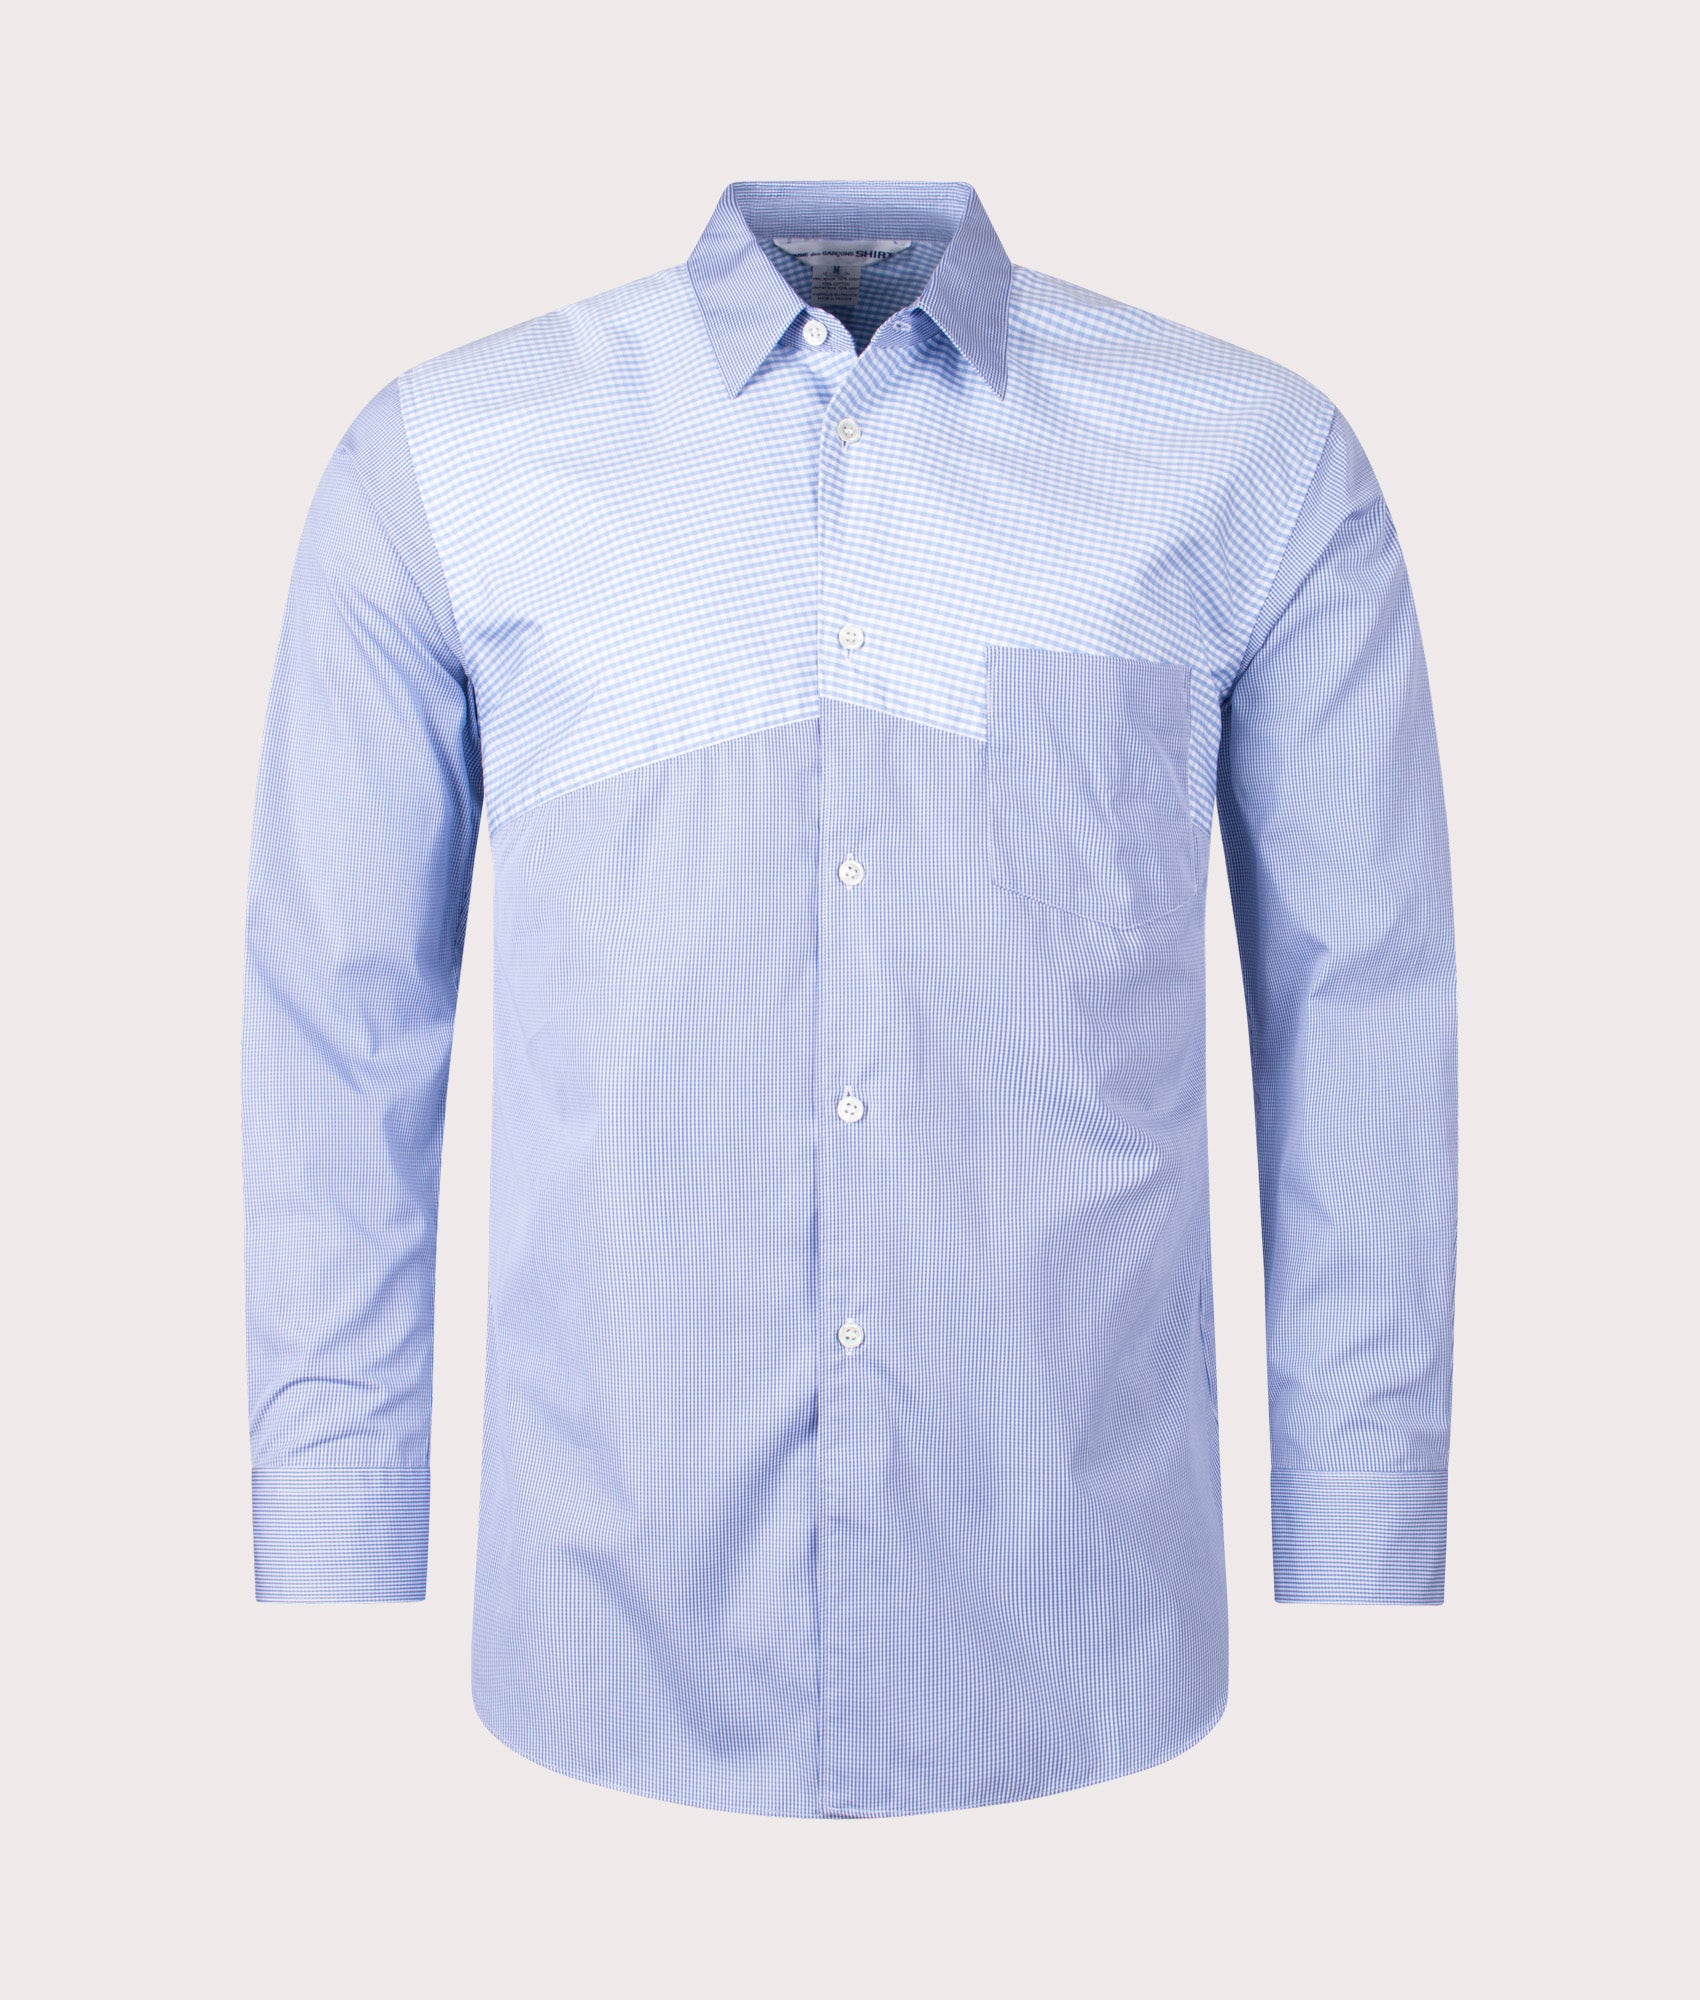 COMME des GARCONS SHIRT Mens Multi Check Shirt - Colour: 1 Check/Check - Size: Large